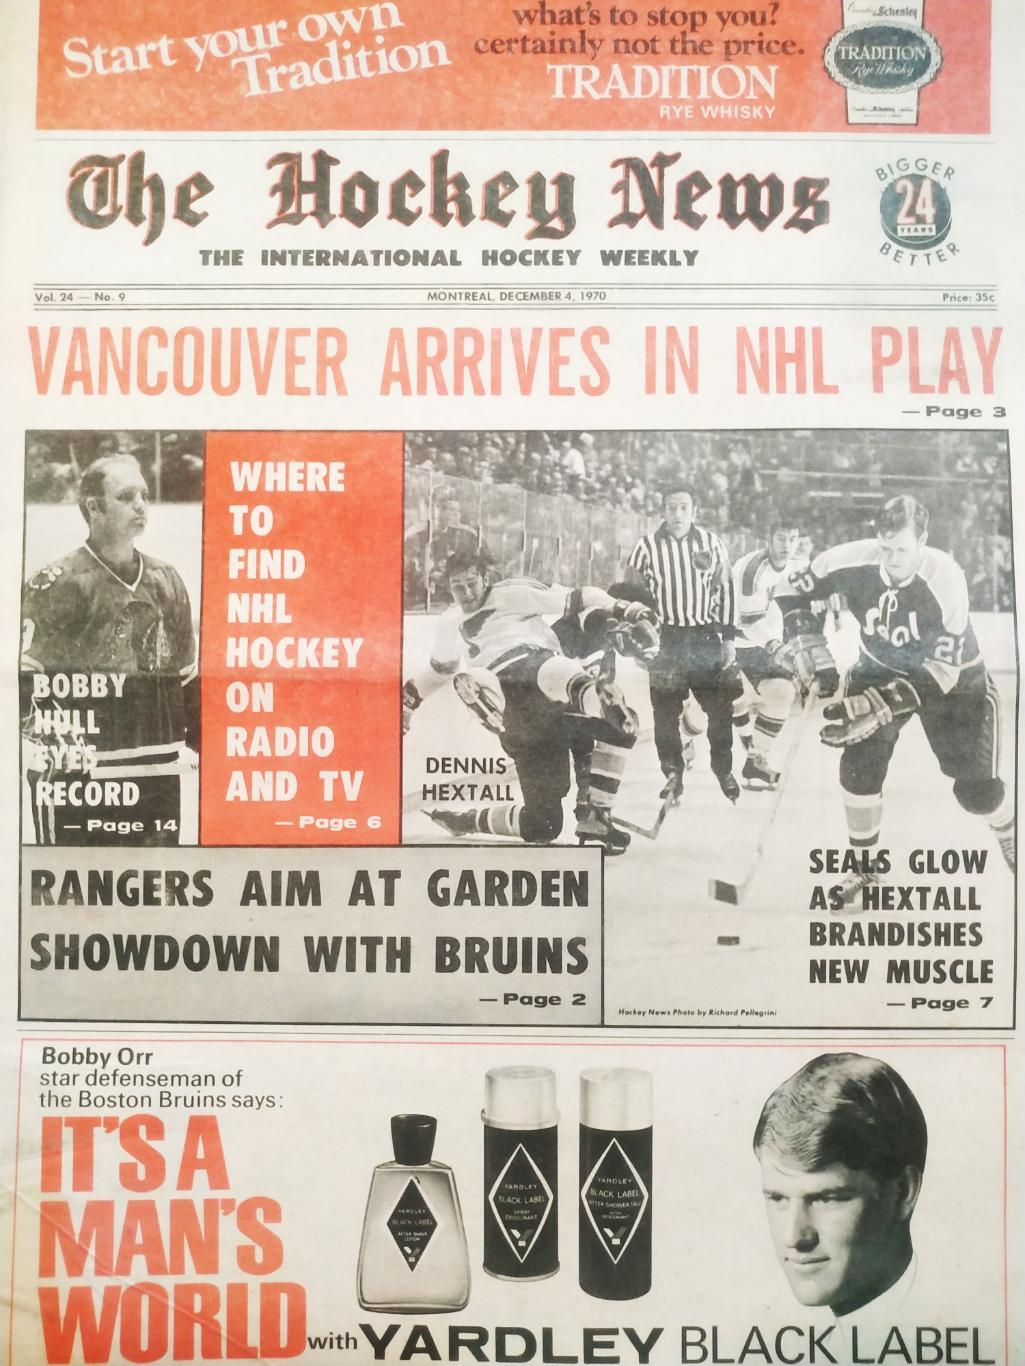 ХОККЕЙ ЖУРНАЛ ЕЖЕНЕДЕЛЬНИК НХЛ НОВОСТИ ХОККЕЯ DEC.4 1970 NHL THE HOCKEY NEWS